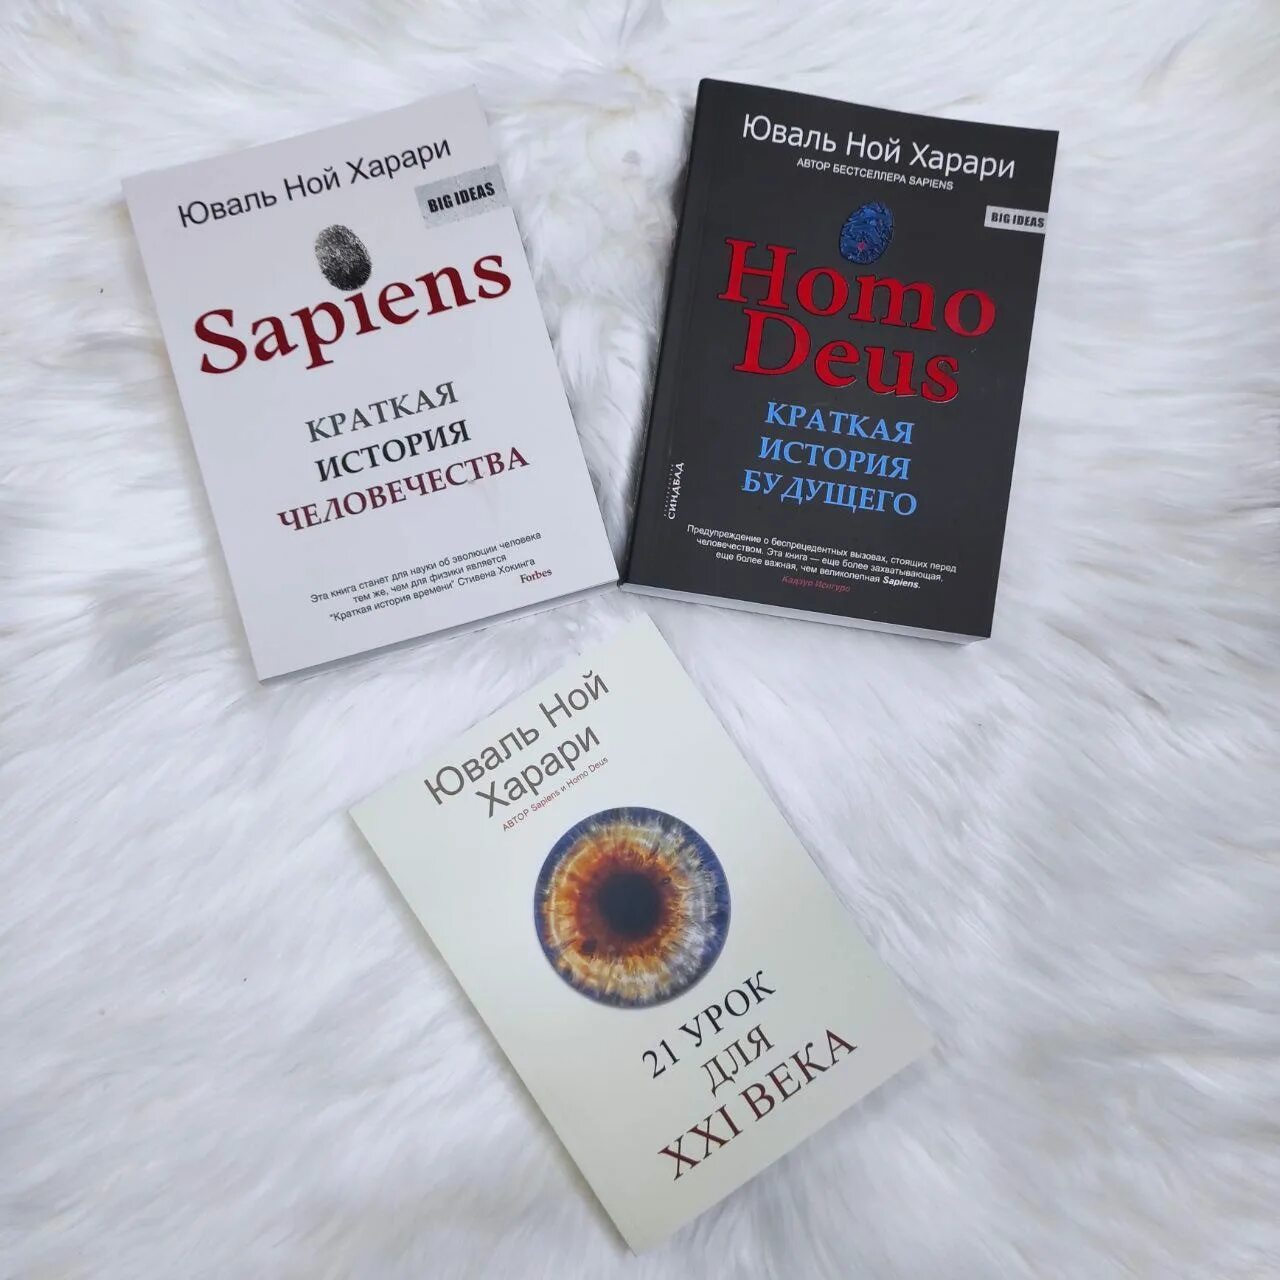 Книга харари 21 урок. Книга 21 урок для 21 века. Sapiens краткая. Homo Deus книга. Sapience book.